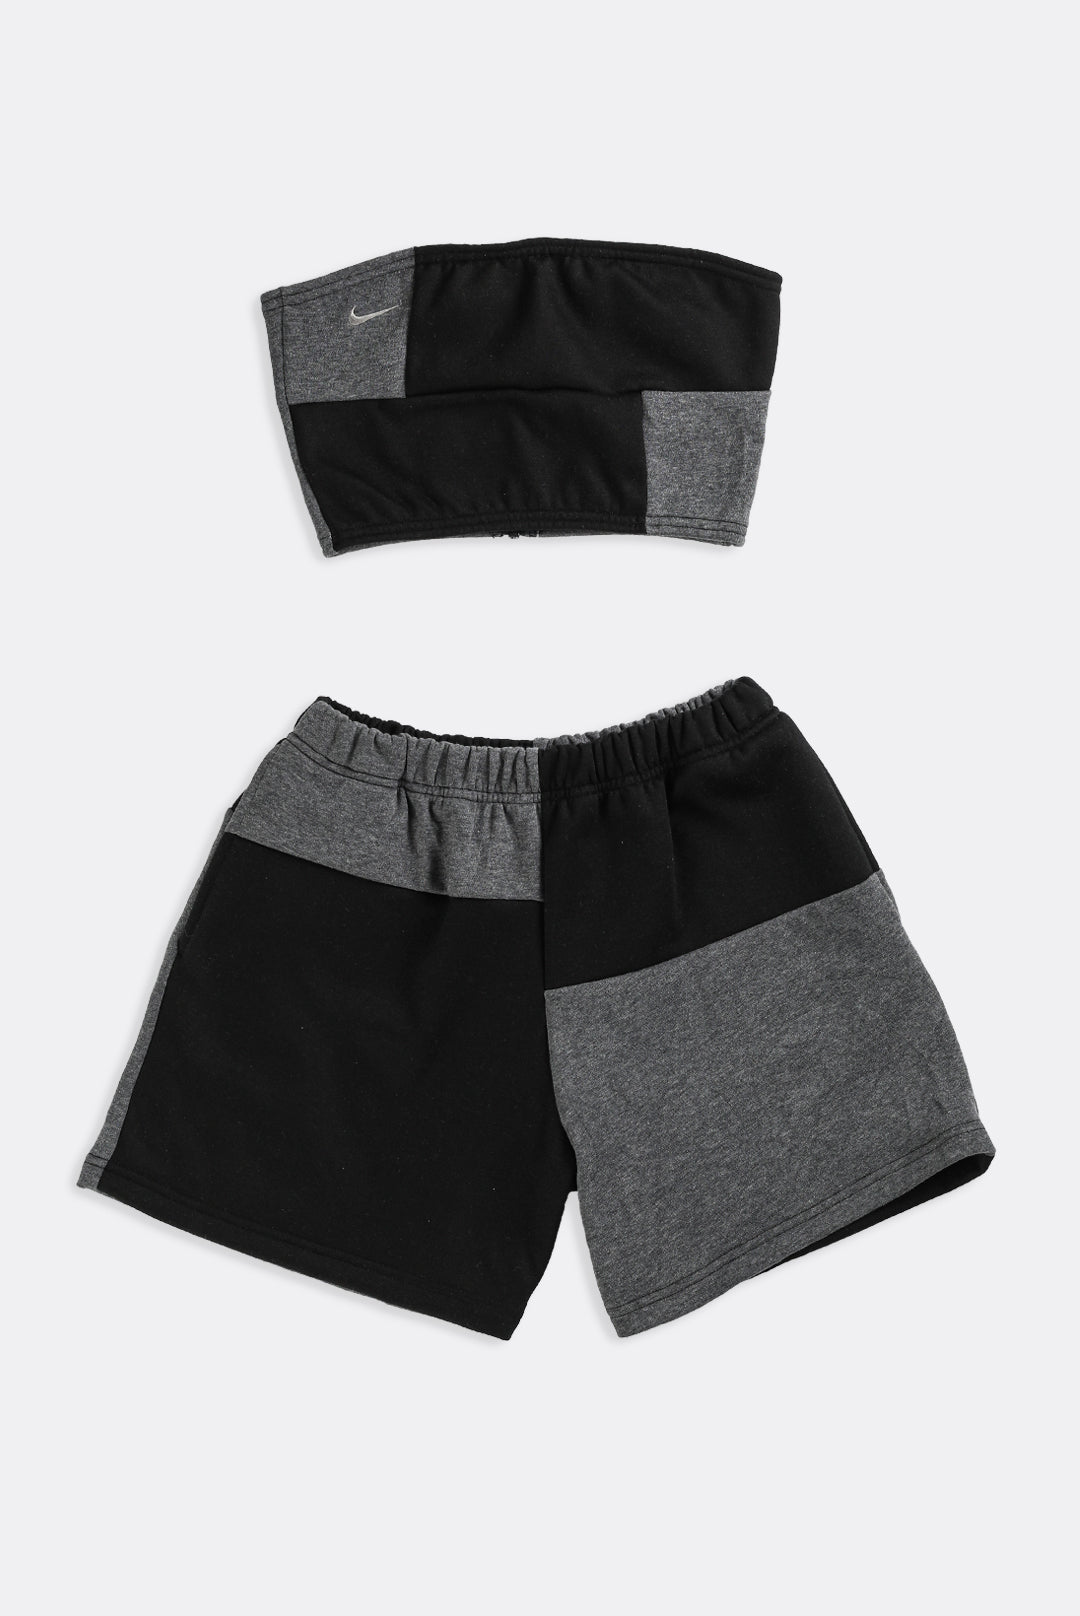 Unisex Rework Nike Patchwork Sweatpants - XS, S, M, L